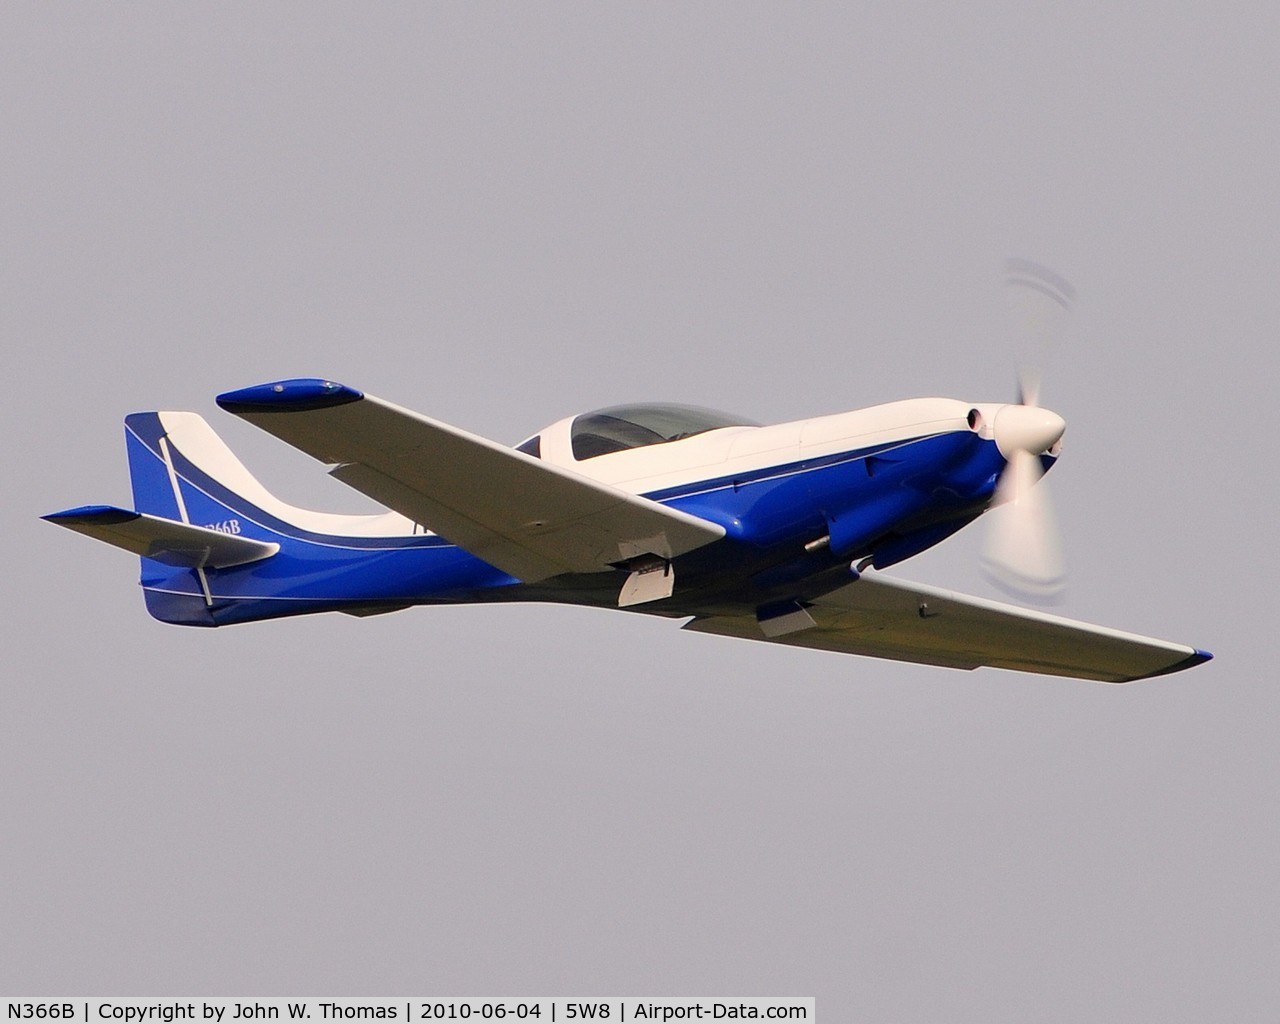 N366B, 2000 Lancair 360 C/N 685-320-429, departing runway 22